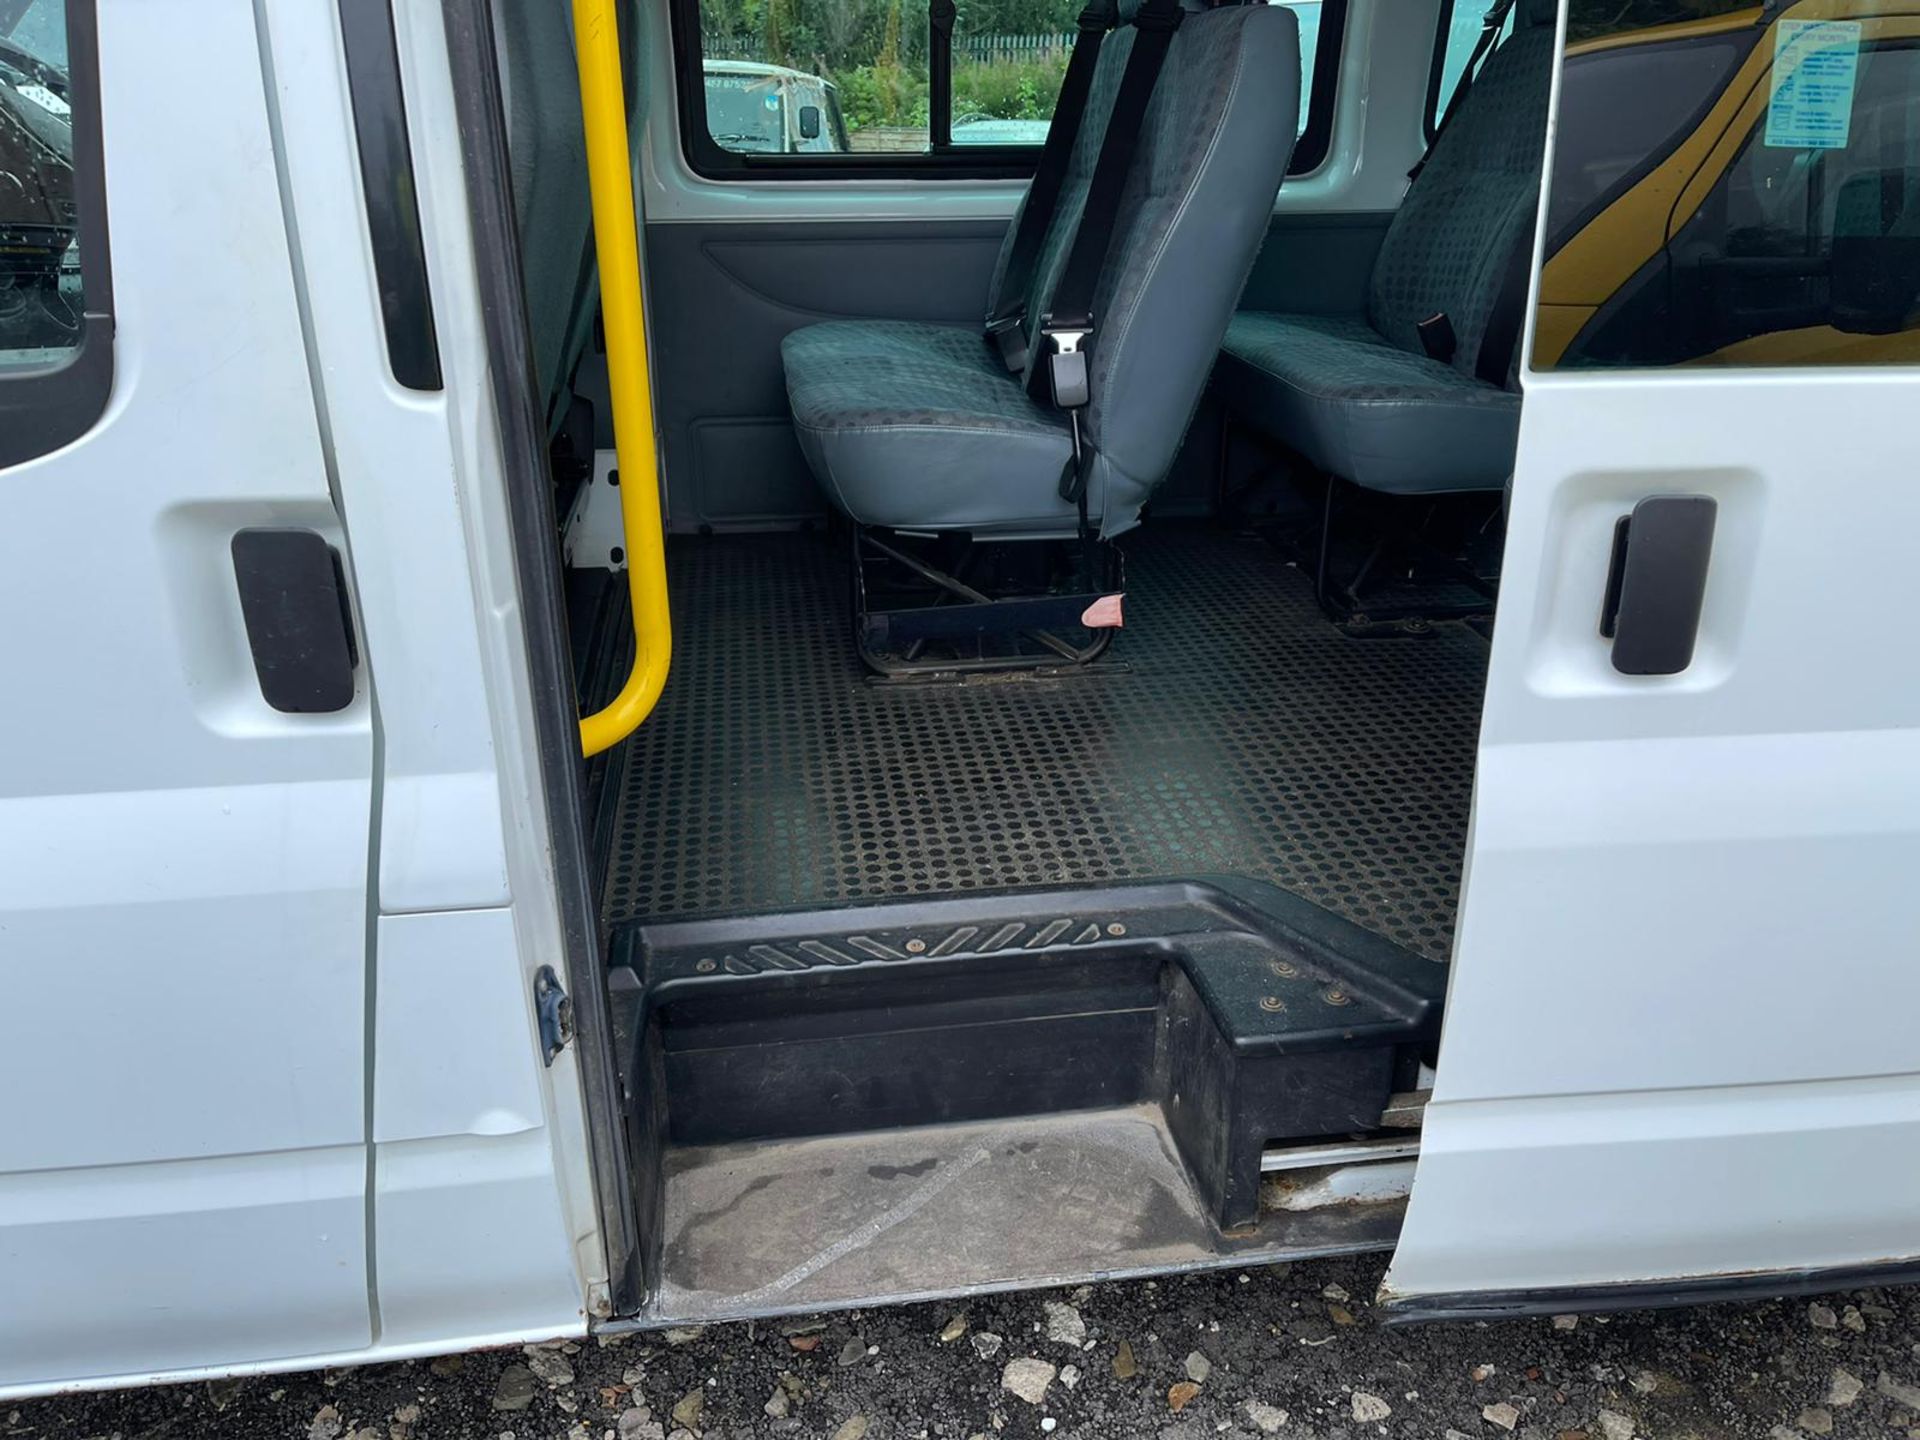 2009 17 seater minibus - Image 16 of 21